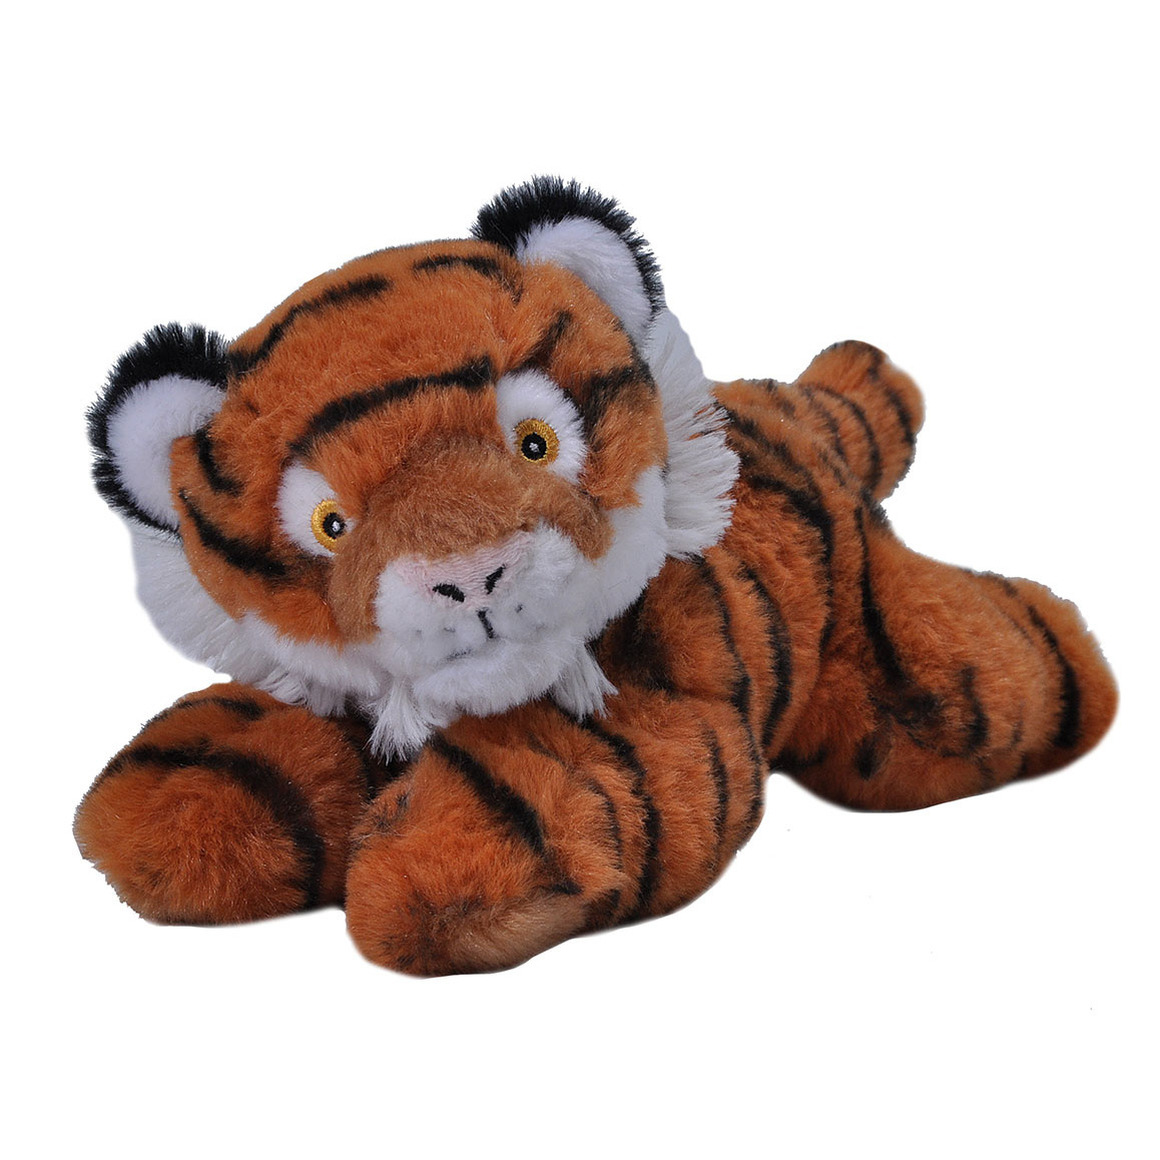 Pluche knuffel dieren Eco-kins tijger van 25 cm